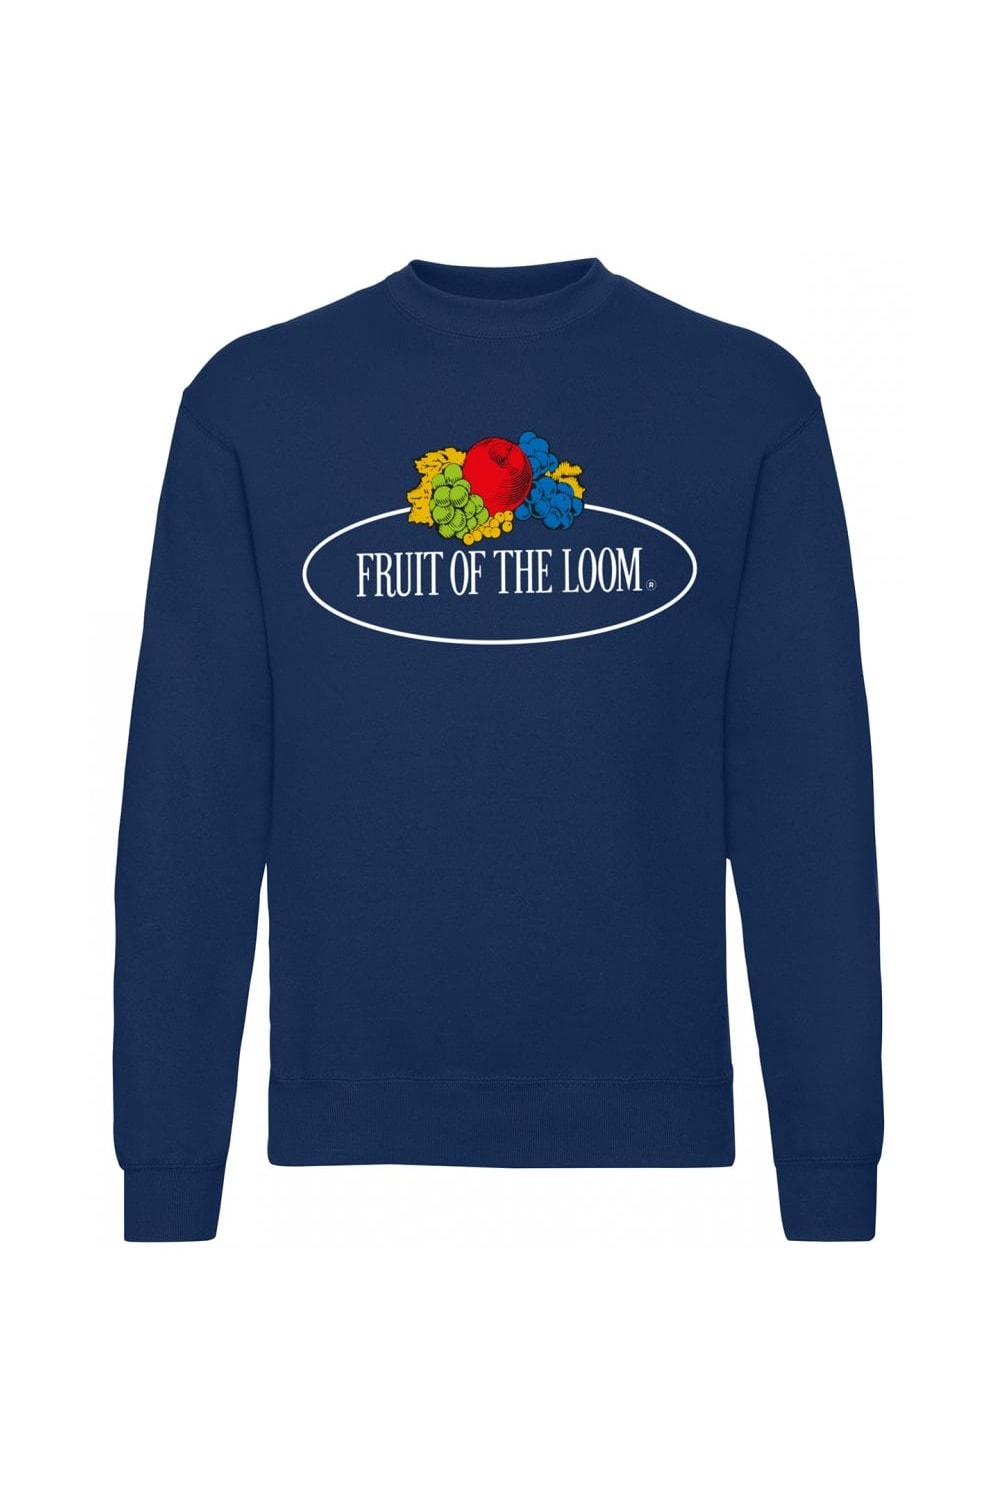 Fruit of the Loom Unisex Adult Vintage Set-in Sweatshirt (Navy)